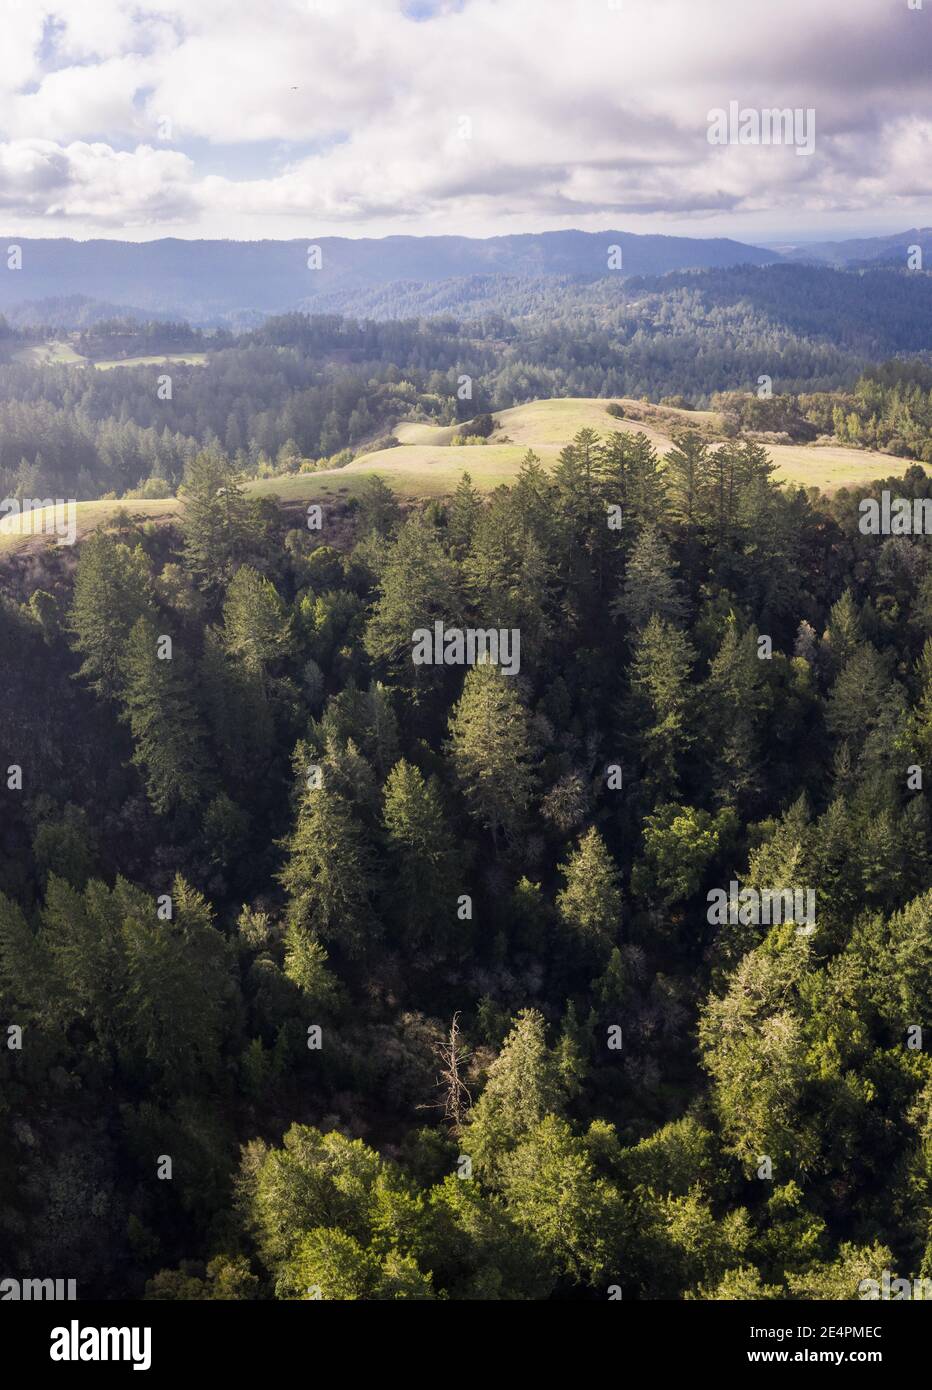 Une forêt à feuilles persistantes mixte couvre les montagnes de Santa Cruz, au sud de San Francisco. Cette région côtière abrite de vastes forêts et plages pittoresques. Banque D'Images